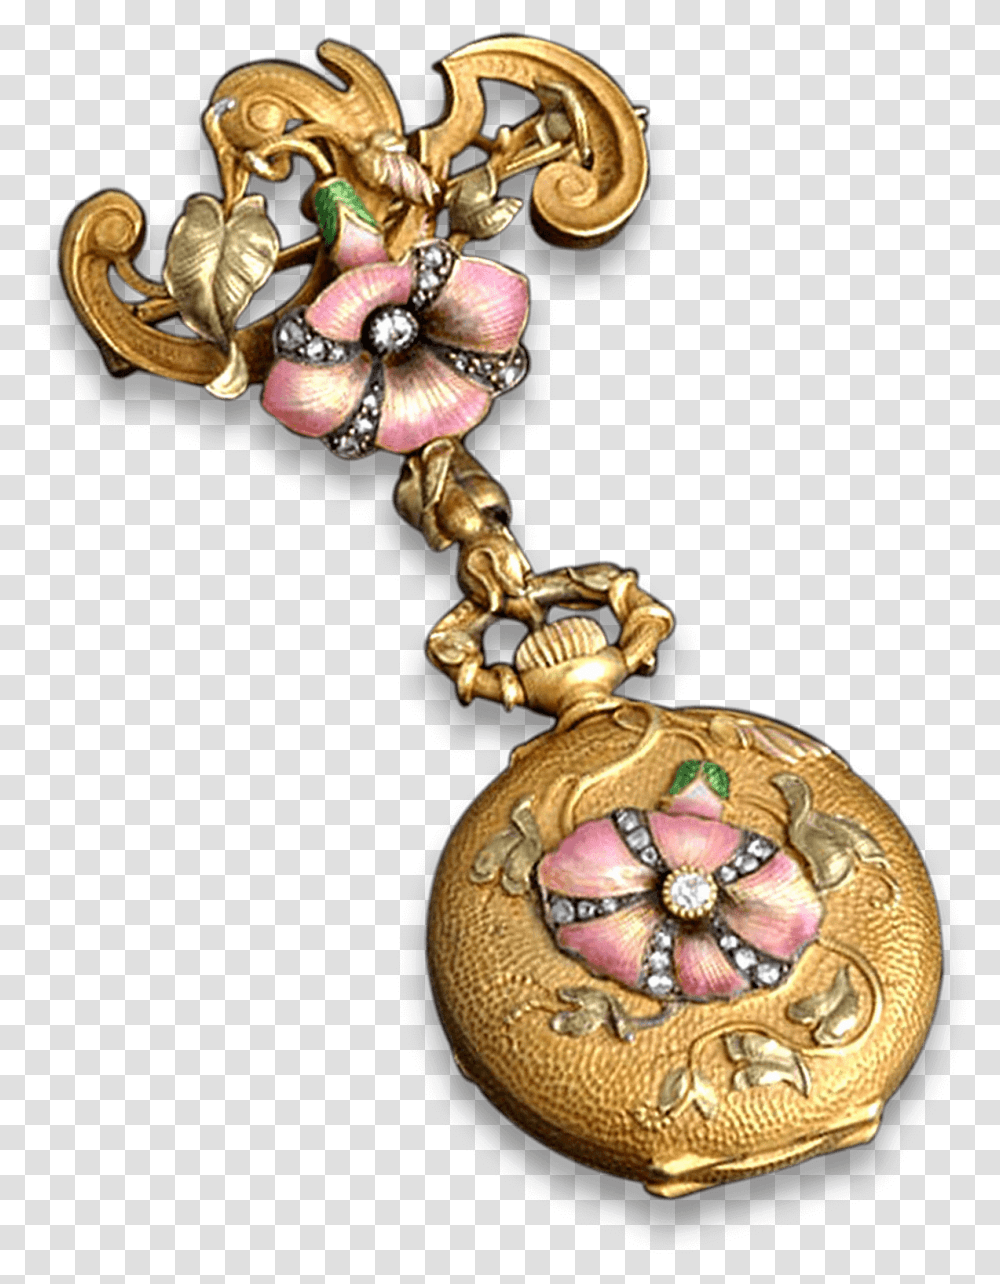 French Art Nouveau Watch Pendant Art Nouveau Jewelry, Accessories, Accessory, Locket, Gold Transparent Png